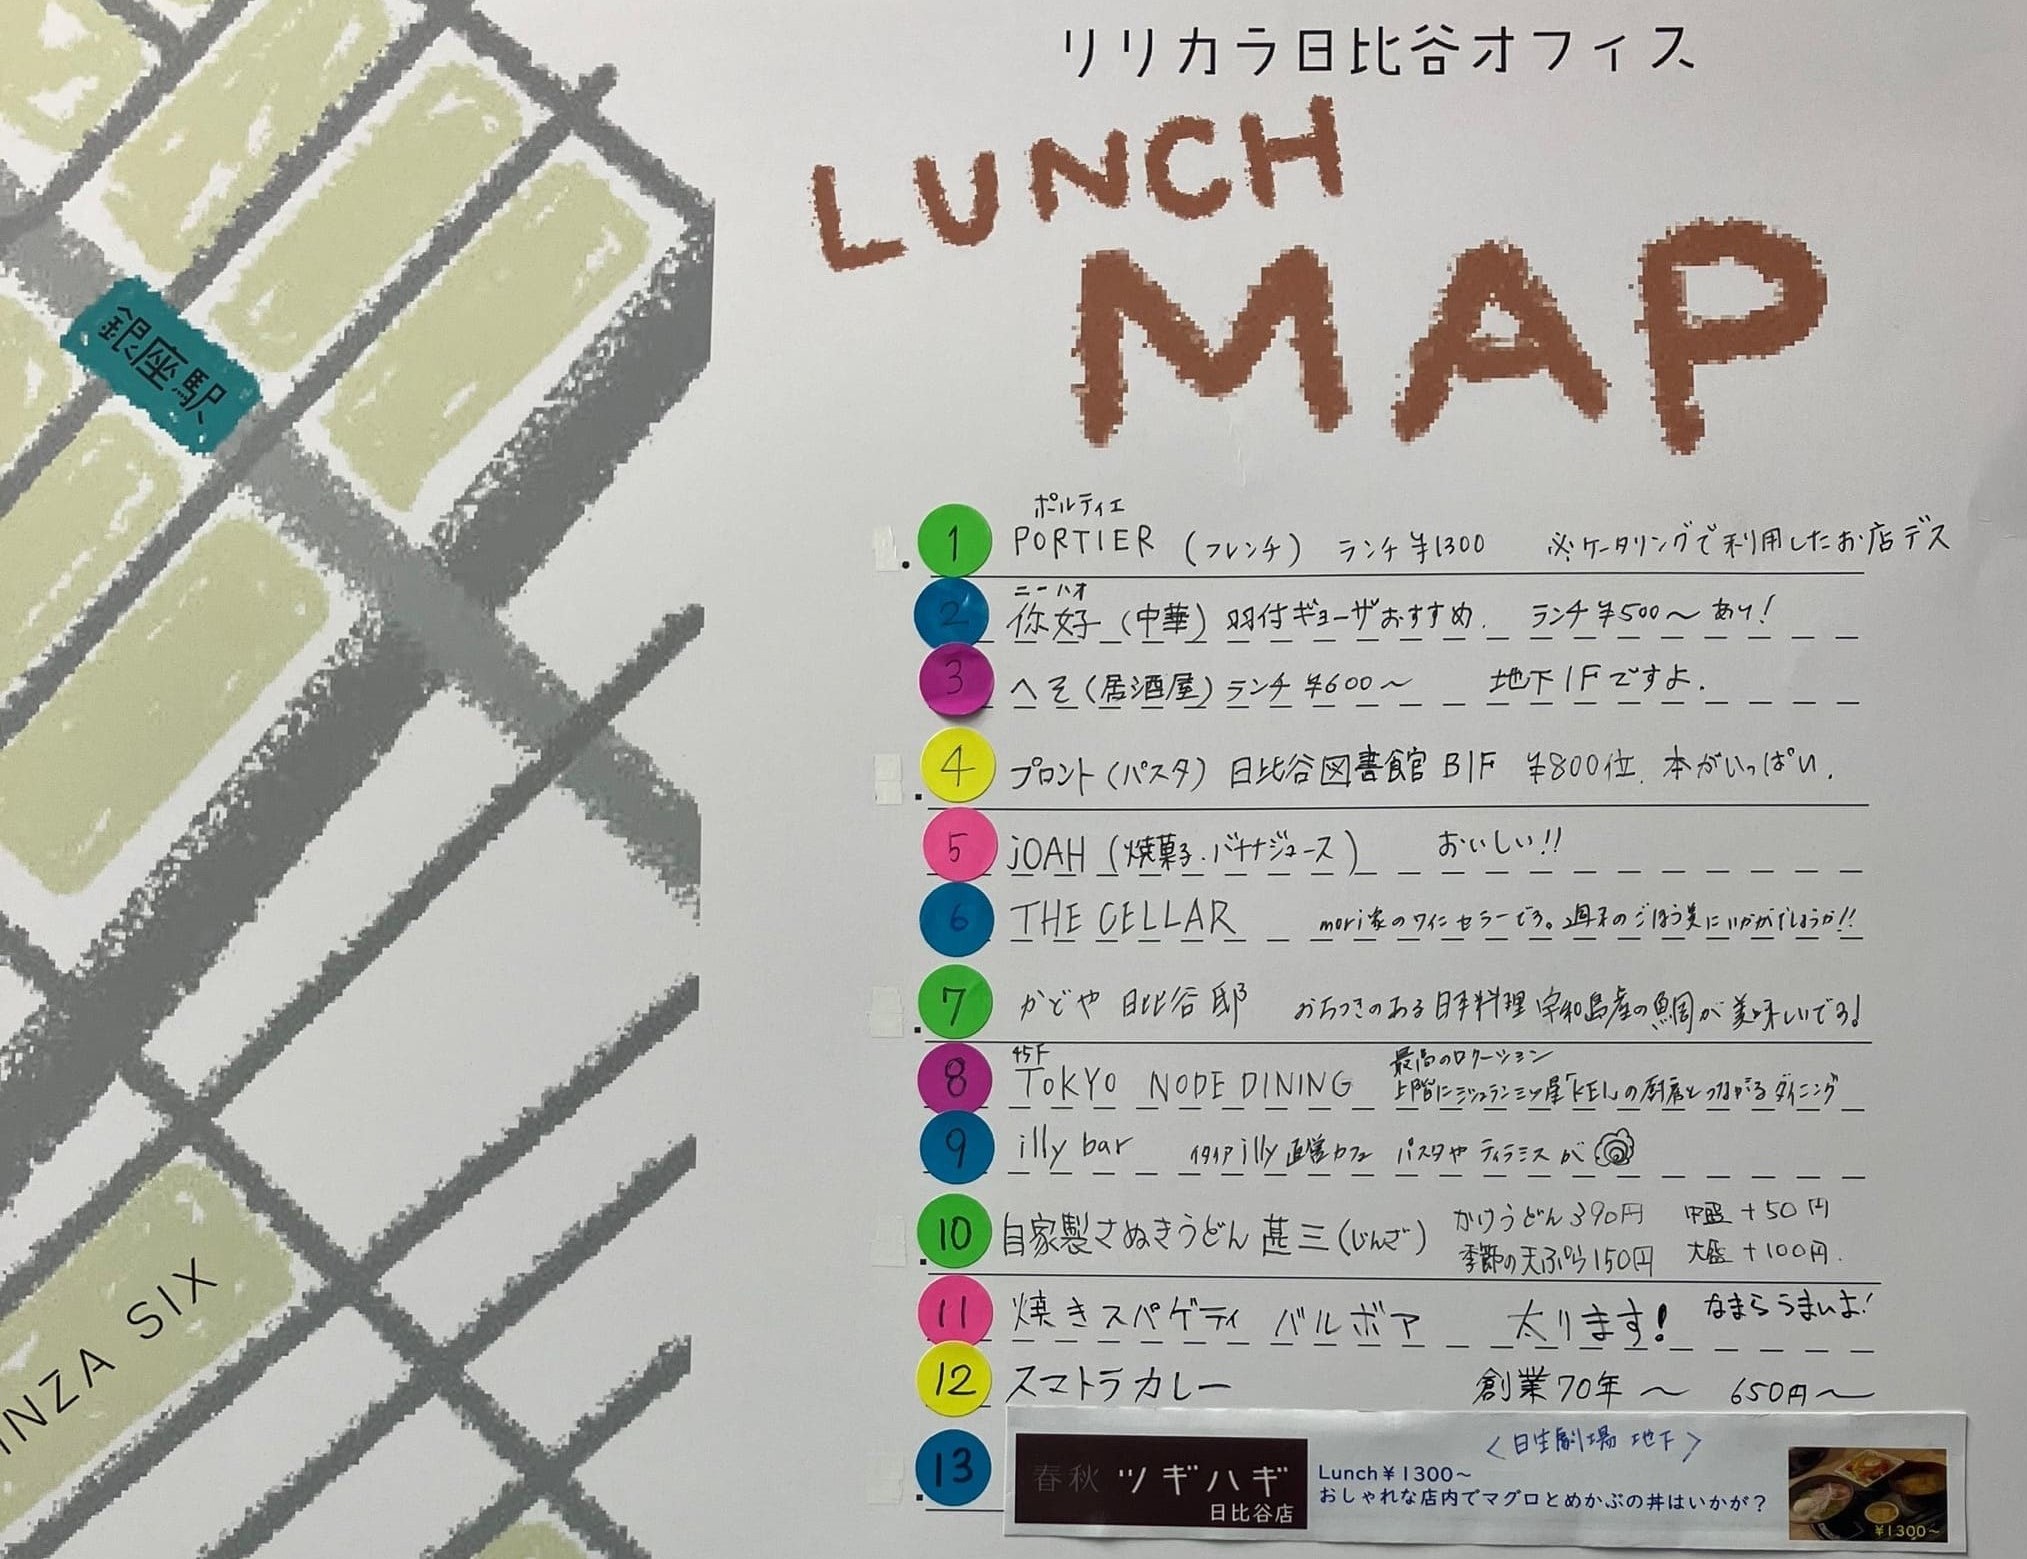 社内コミュニケーションの活性化を狙った、オフィス周辺飲食店地図